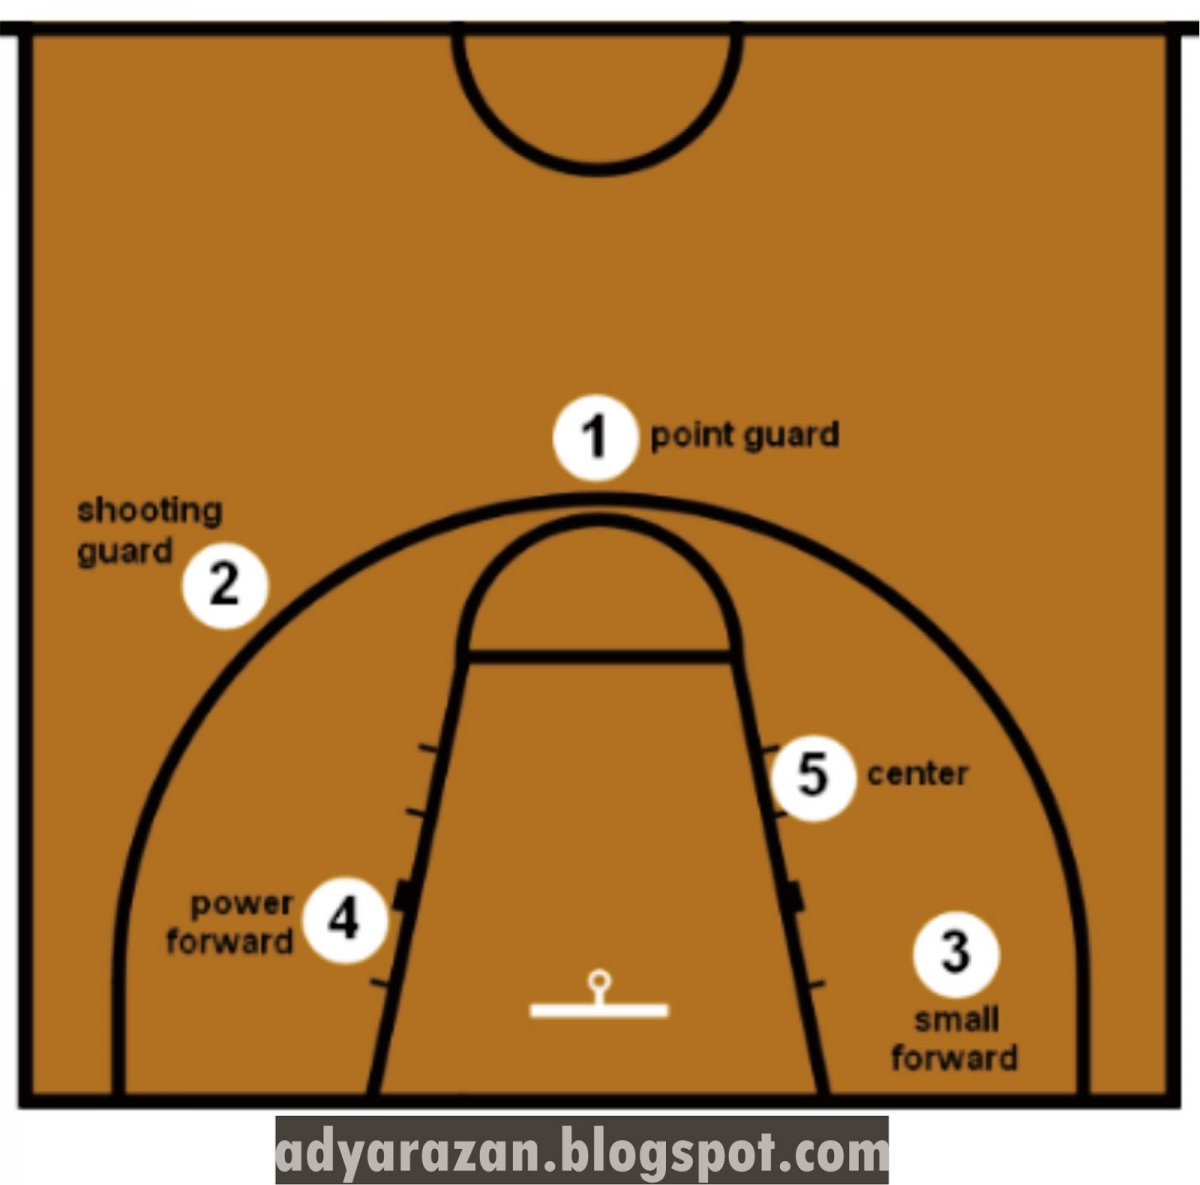 Позиции амплуа игроков в баскетболе